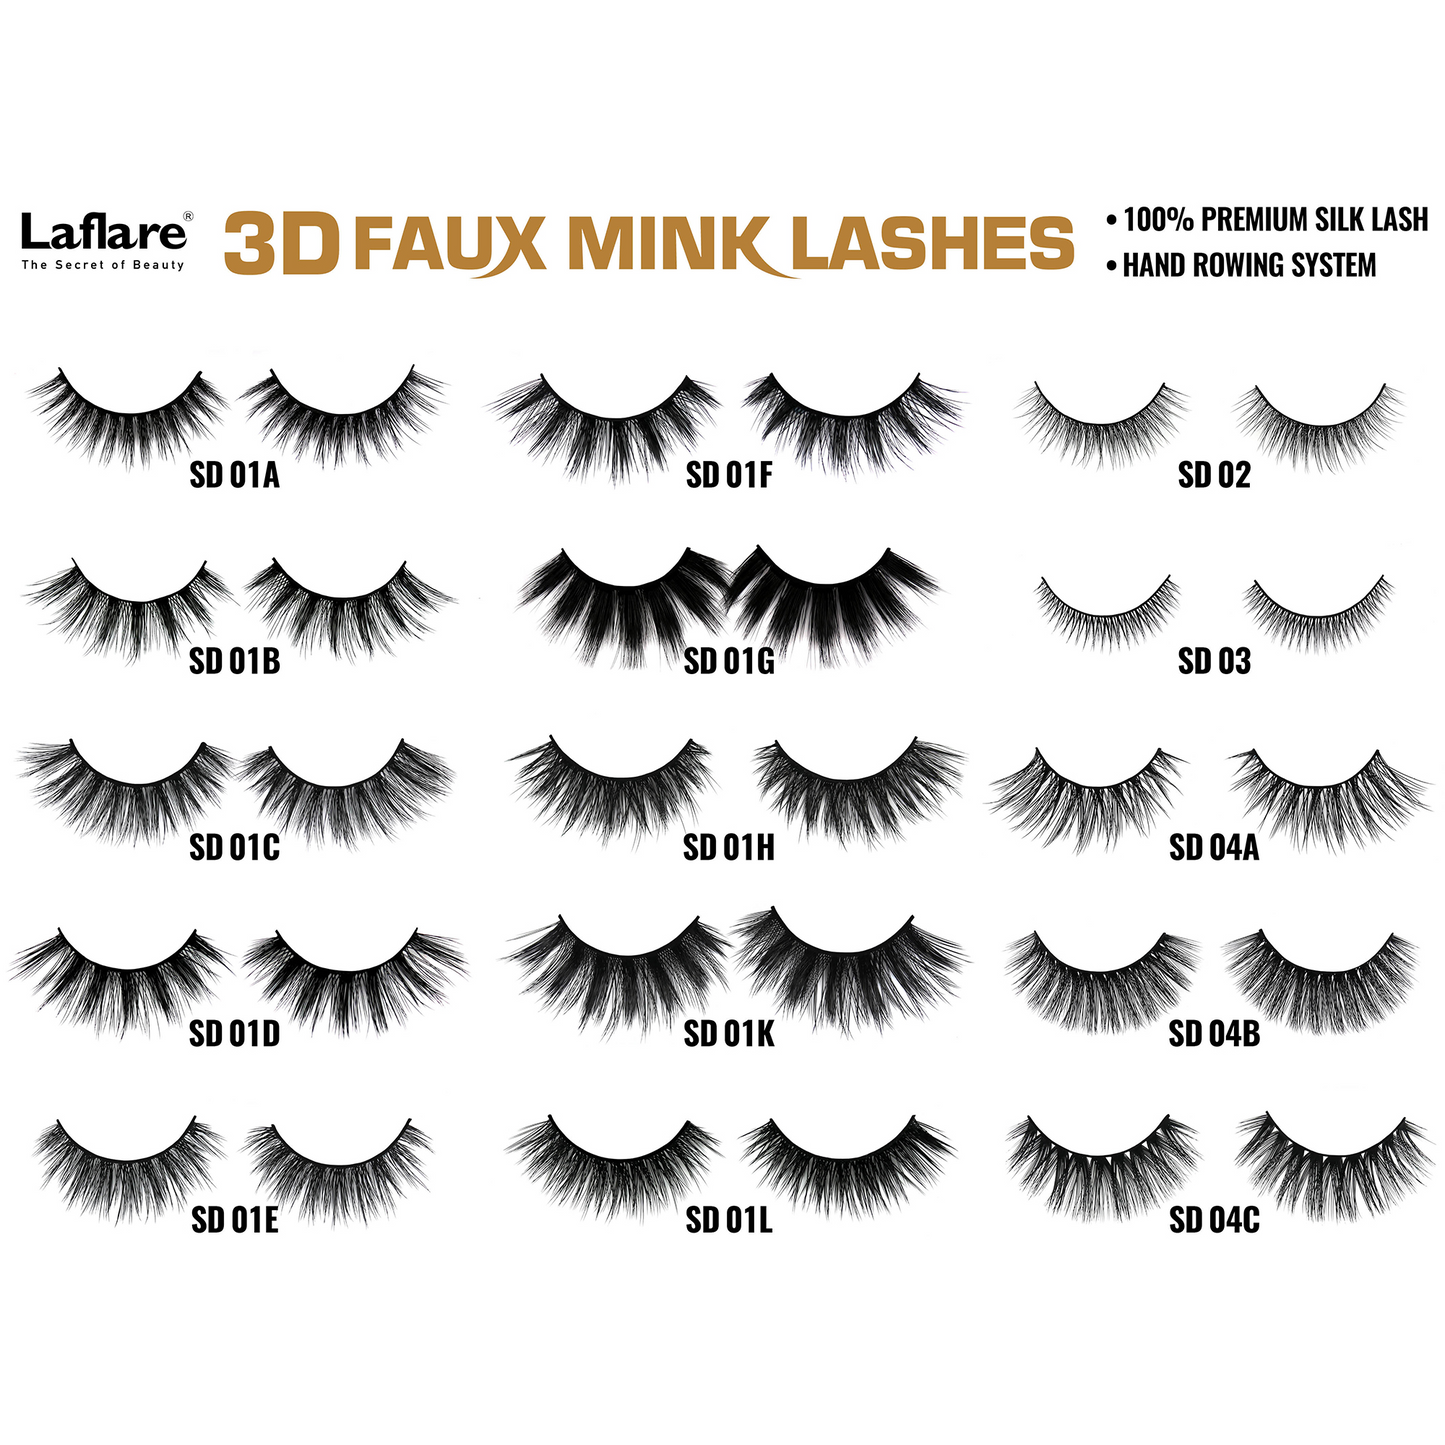 LAFLARE 3D FAUX MINK LASHES - SD04C